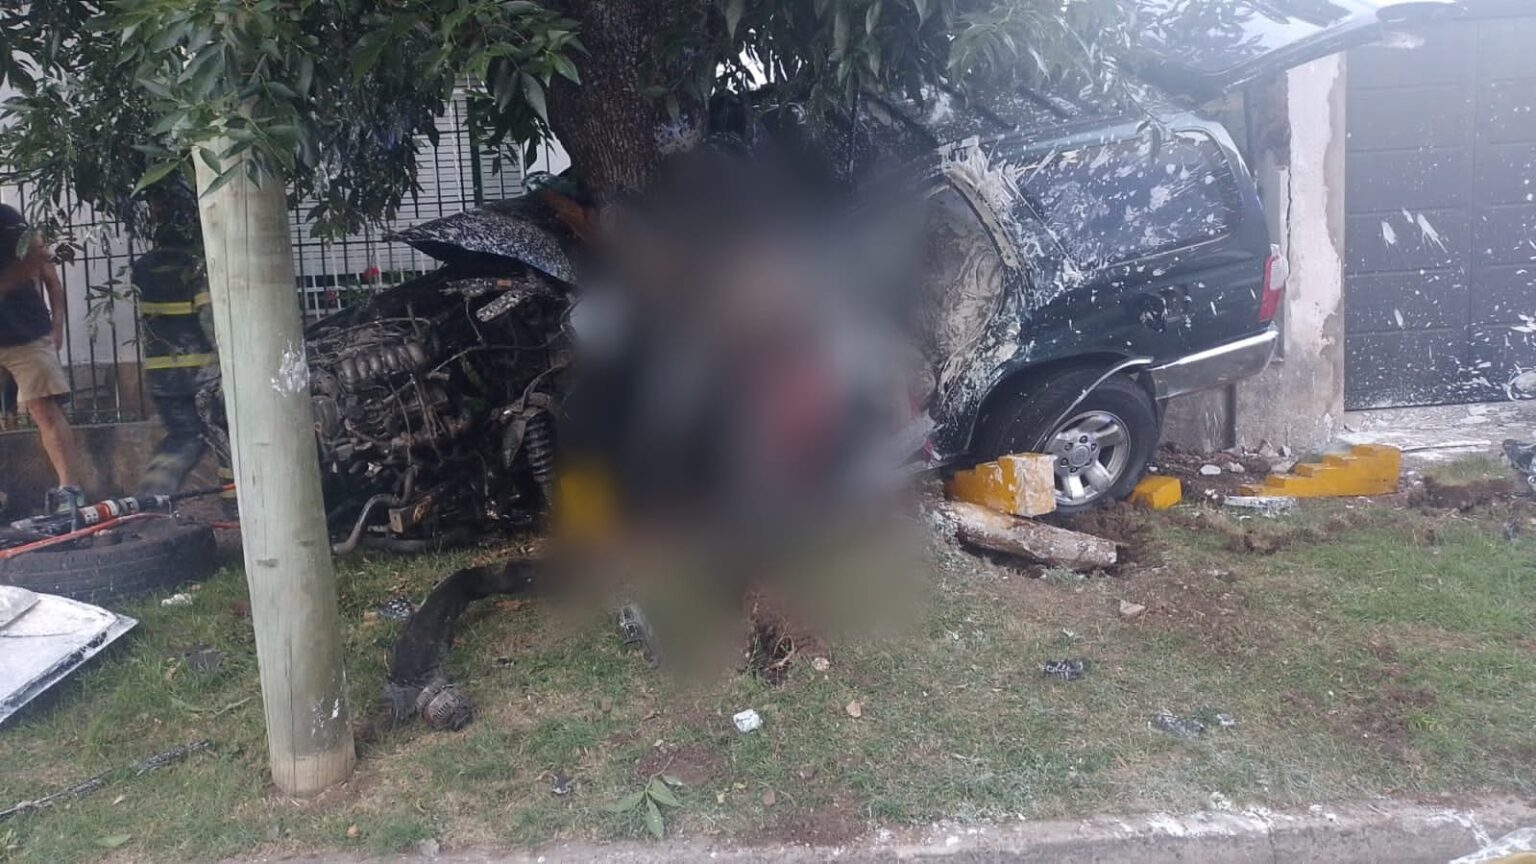 Robaron en Ezpeleta, escaparon de la Policía y se incrustaron en un árbol en Bernal: dos ladrones fallecidos y tres detenidos